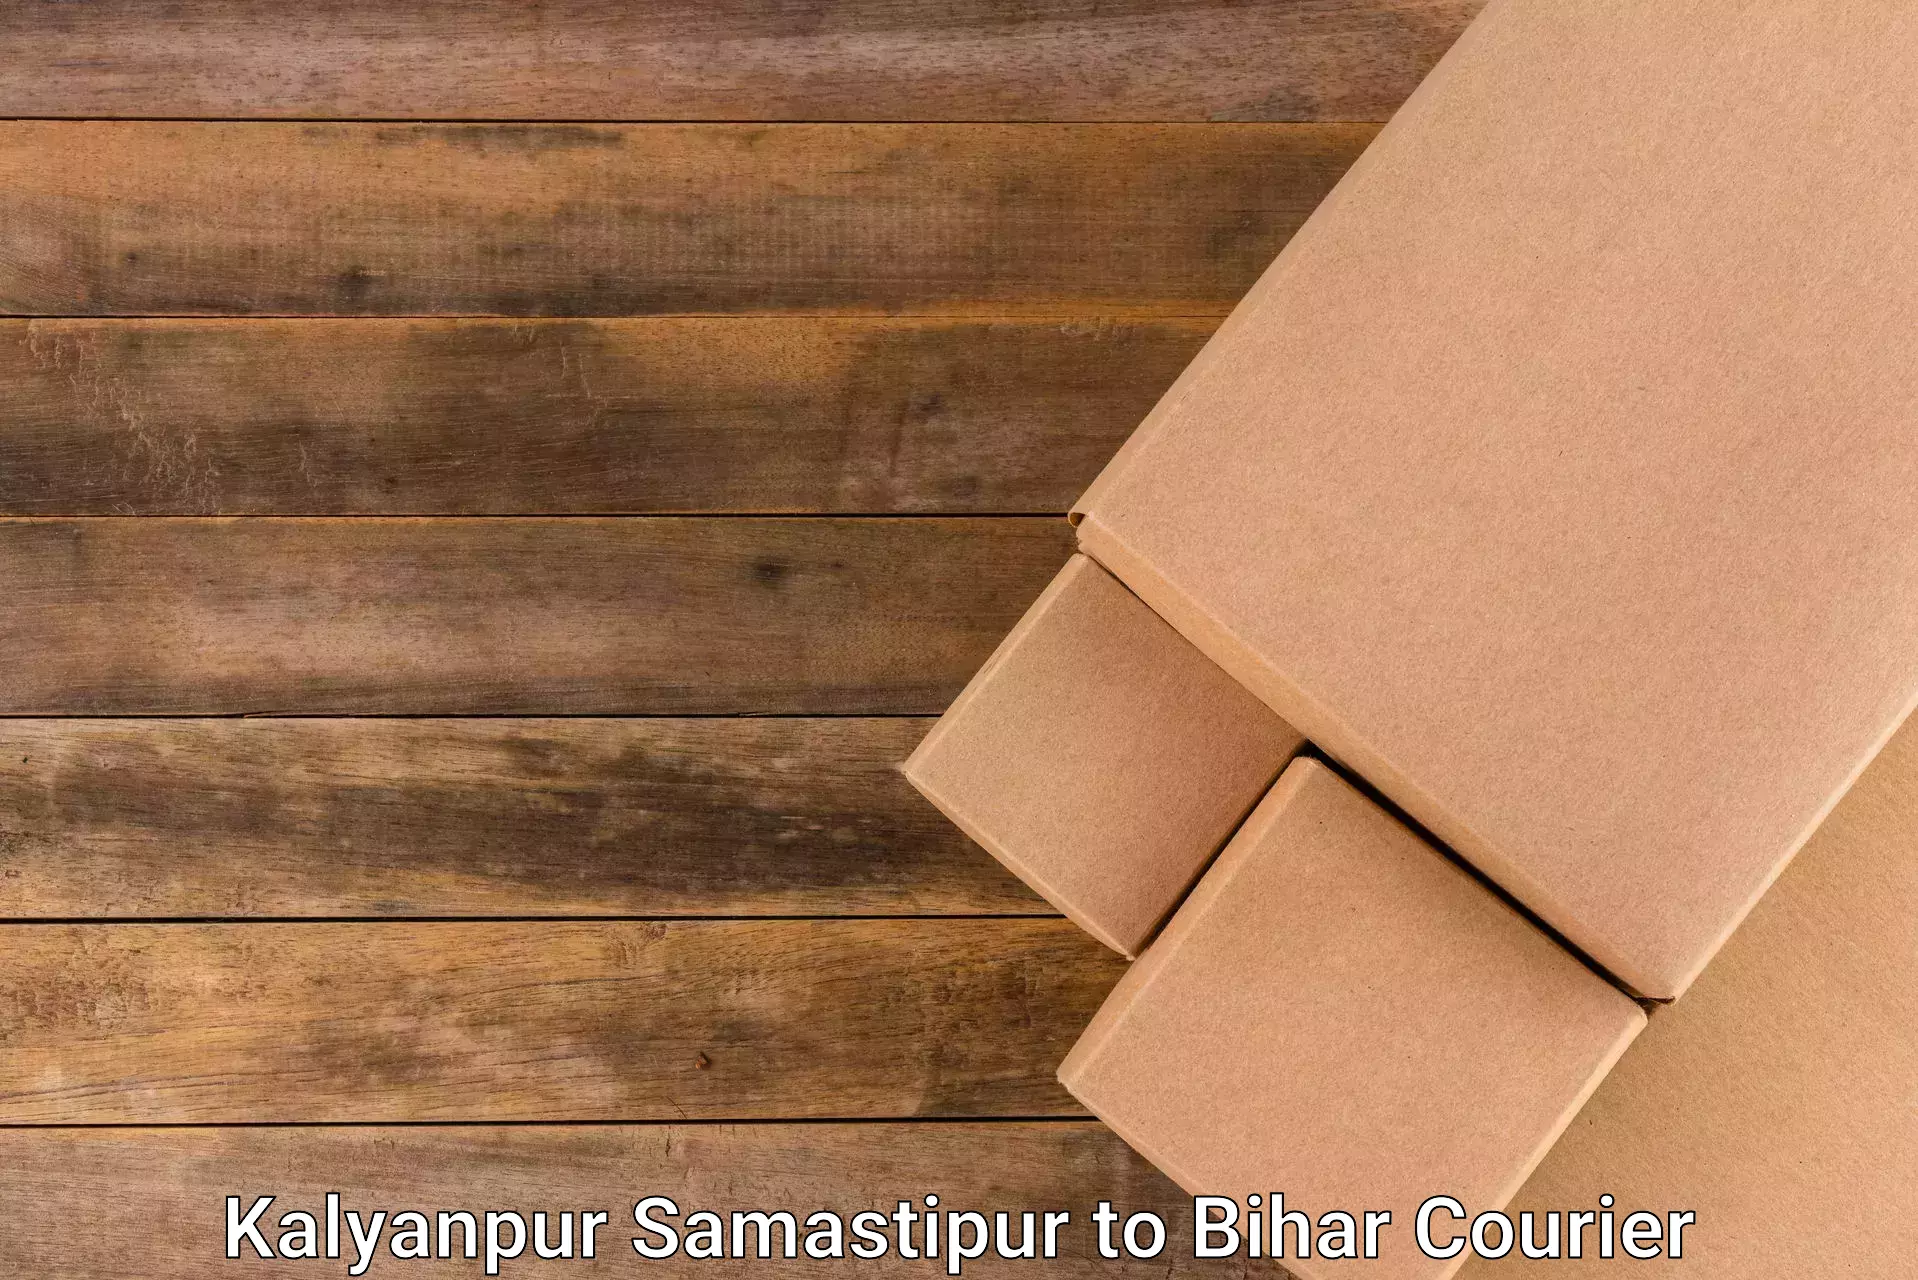 Special handling courier Kalyanpur Samastipur to Dighwara